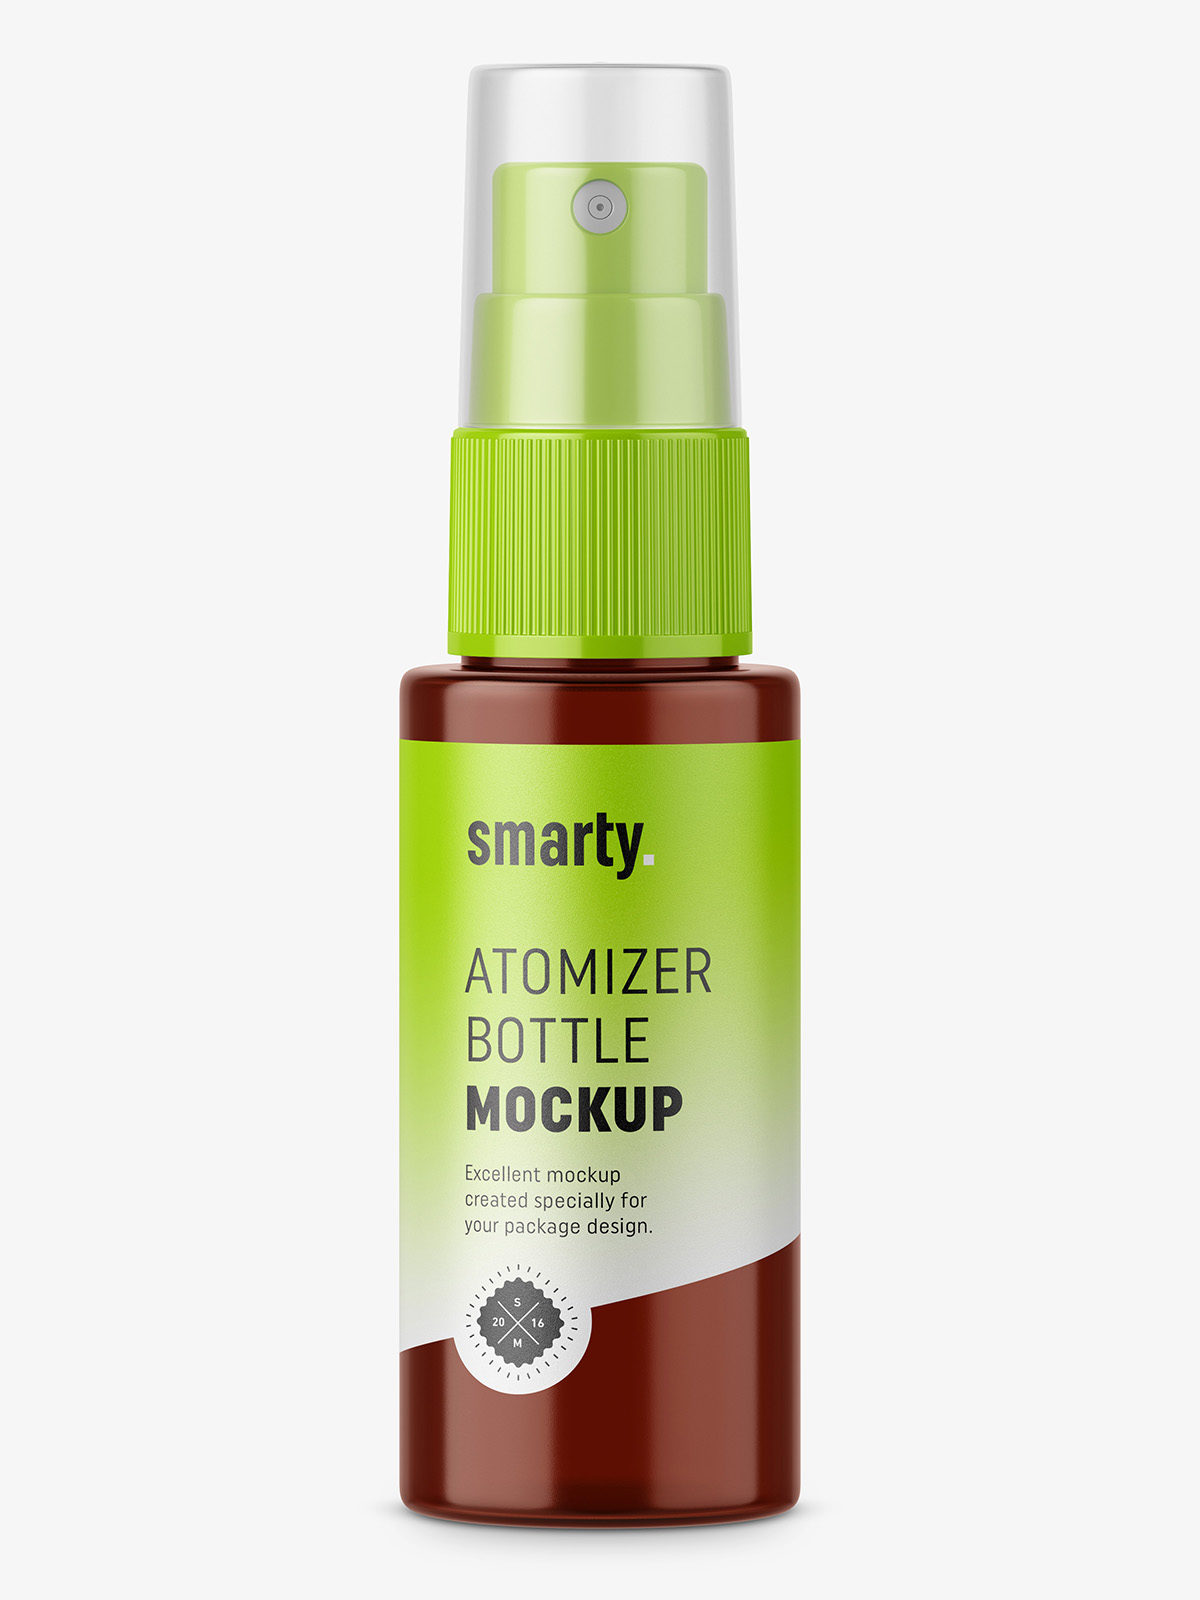 Download Spray bottle mockup - Smarty Mockups